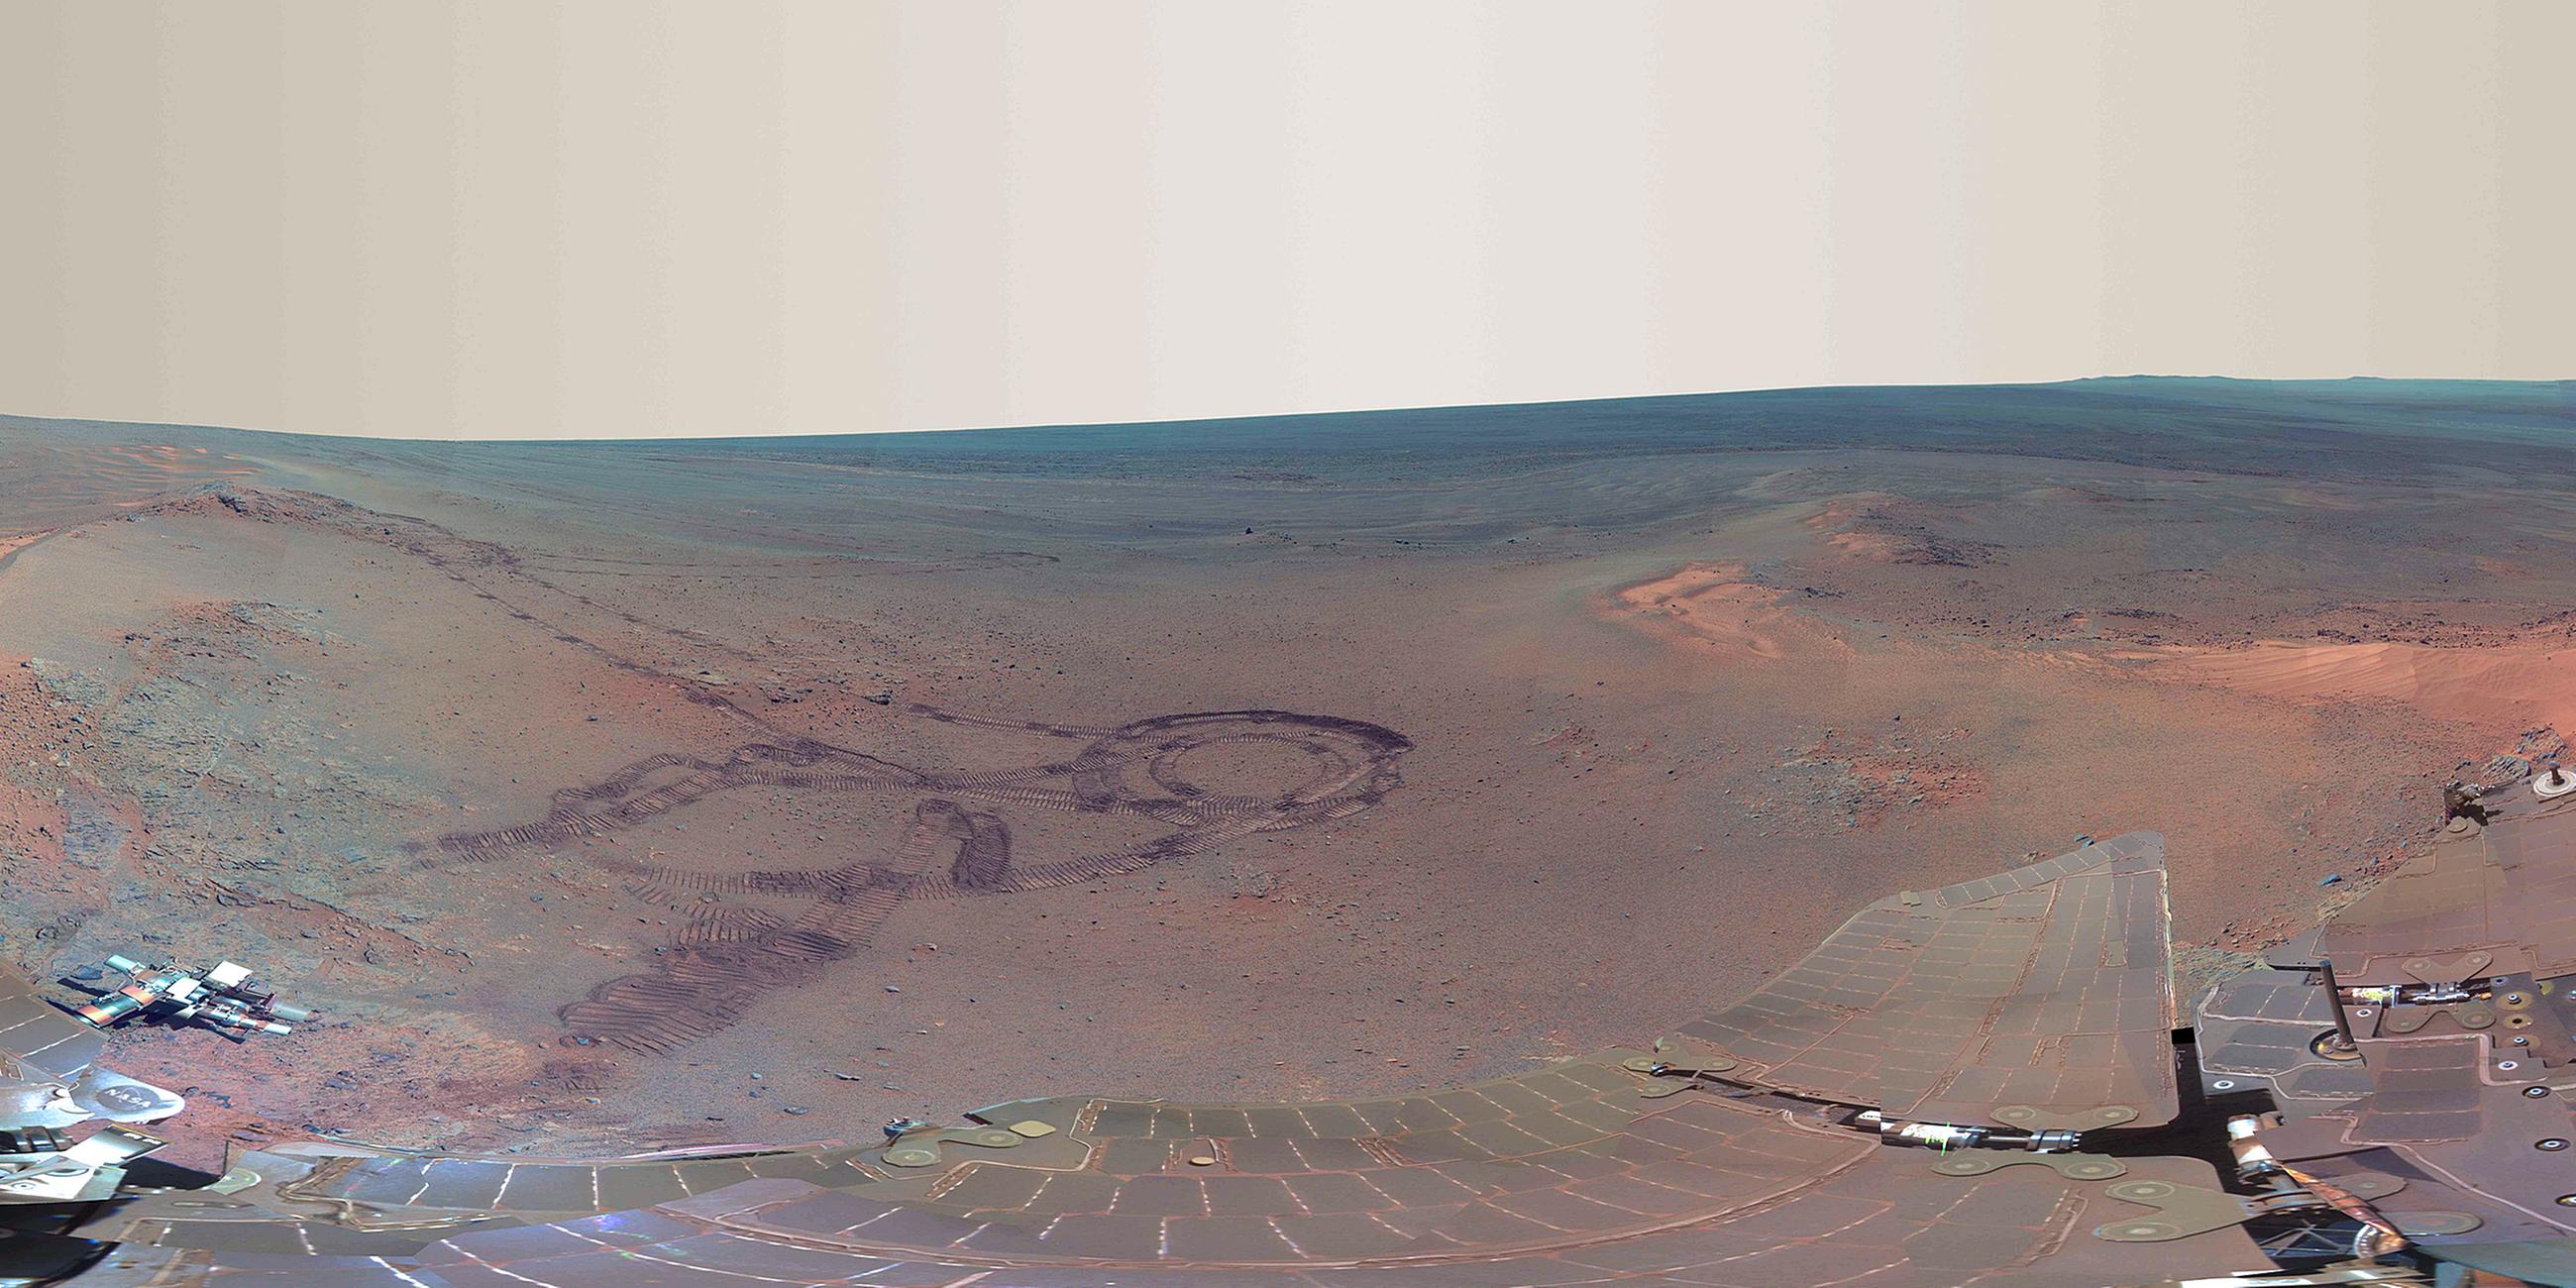 Archiv: Panorama Bild aufgenommen vom Mars-Rover "Opportunity", aufgenommen am 09.07.2012